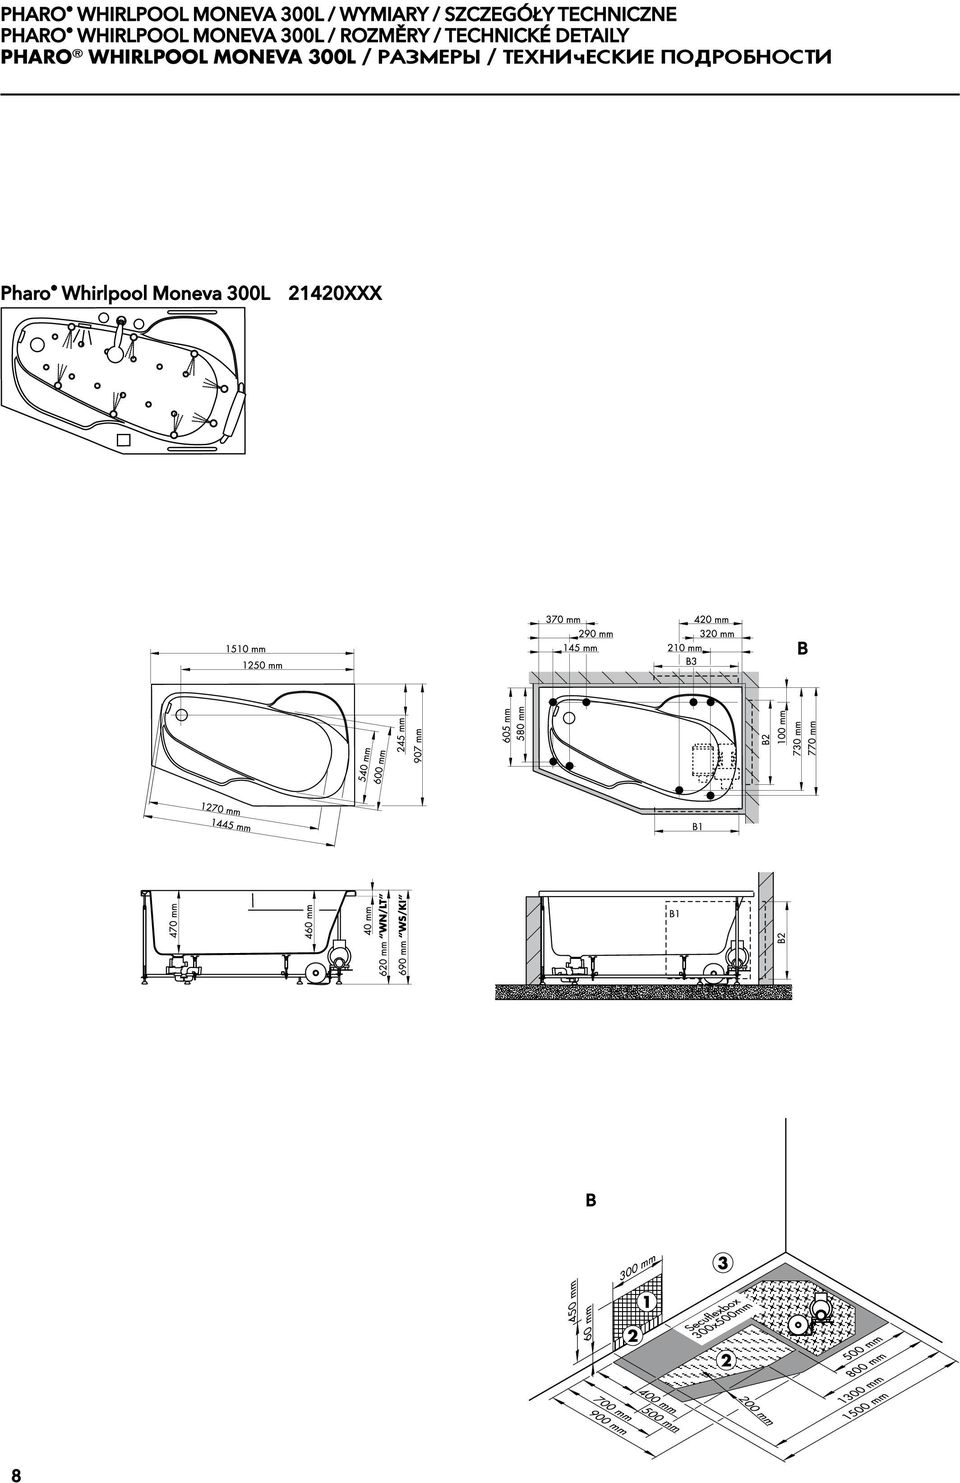 technické detaily Pharo Whirlpool Moneva 300L /